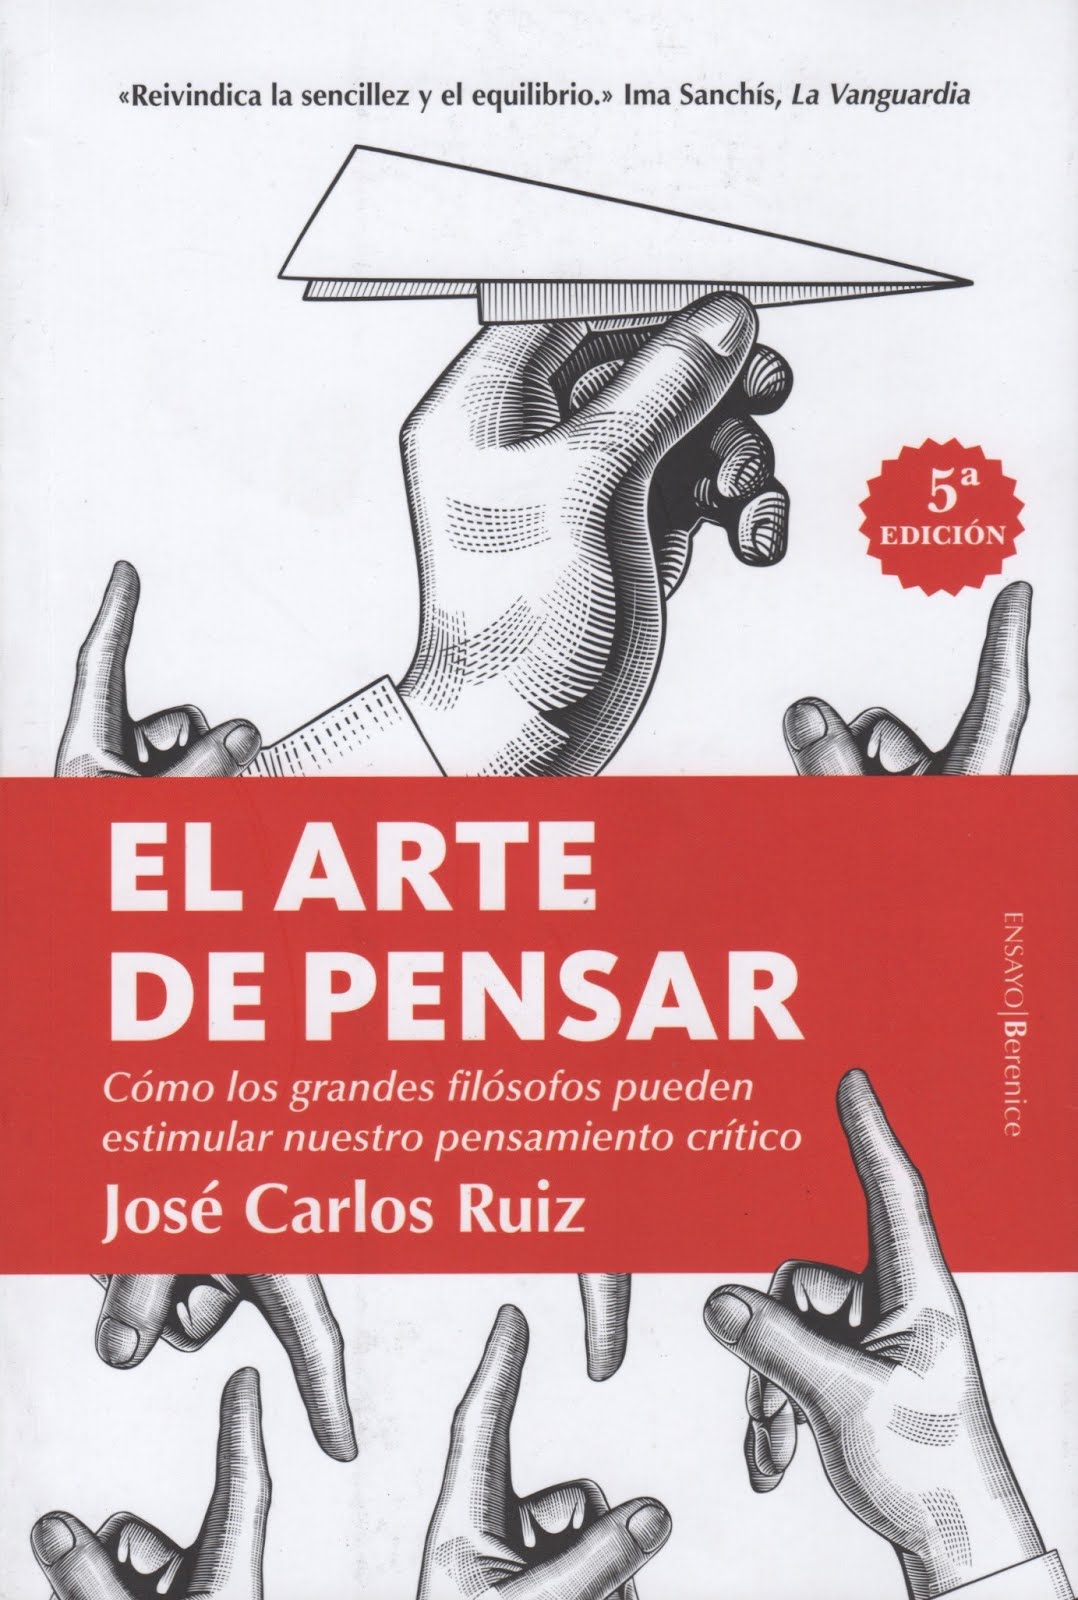 José Carlos Ruiz (El arte de pensar) Cómo los grandes filósofos pueden estimular nuestro pensamient